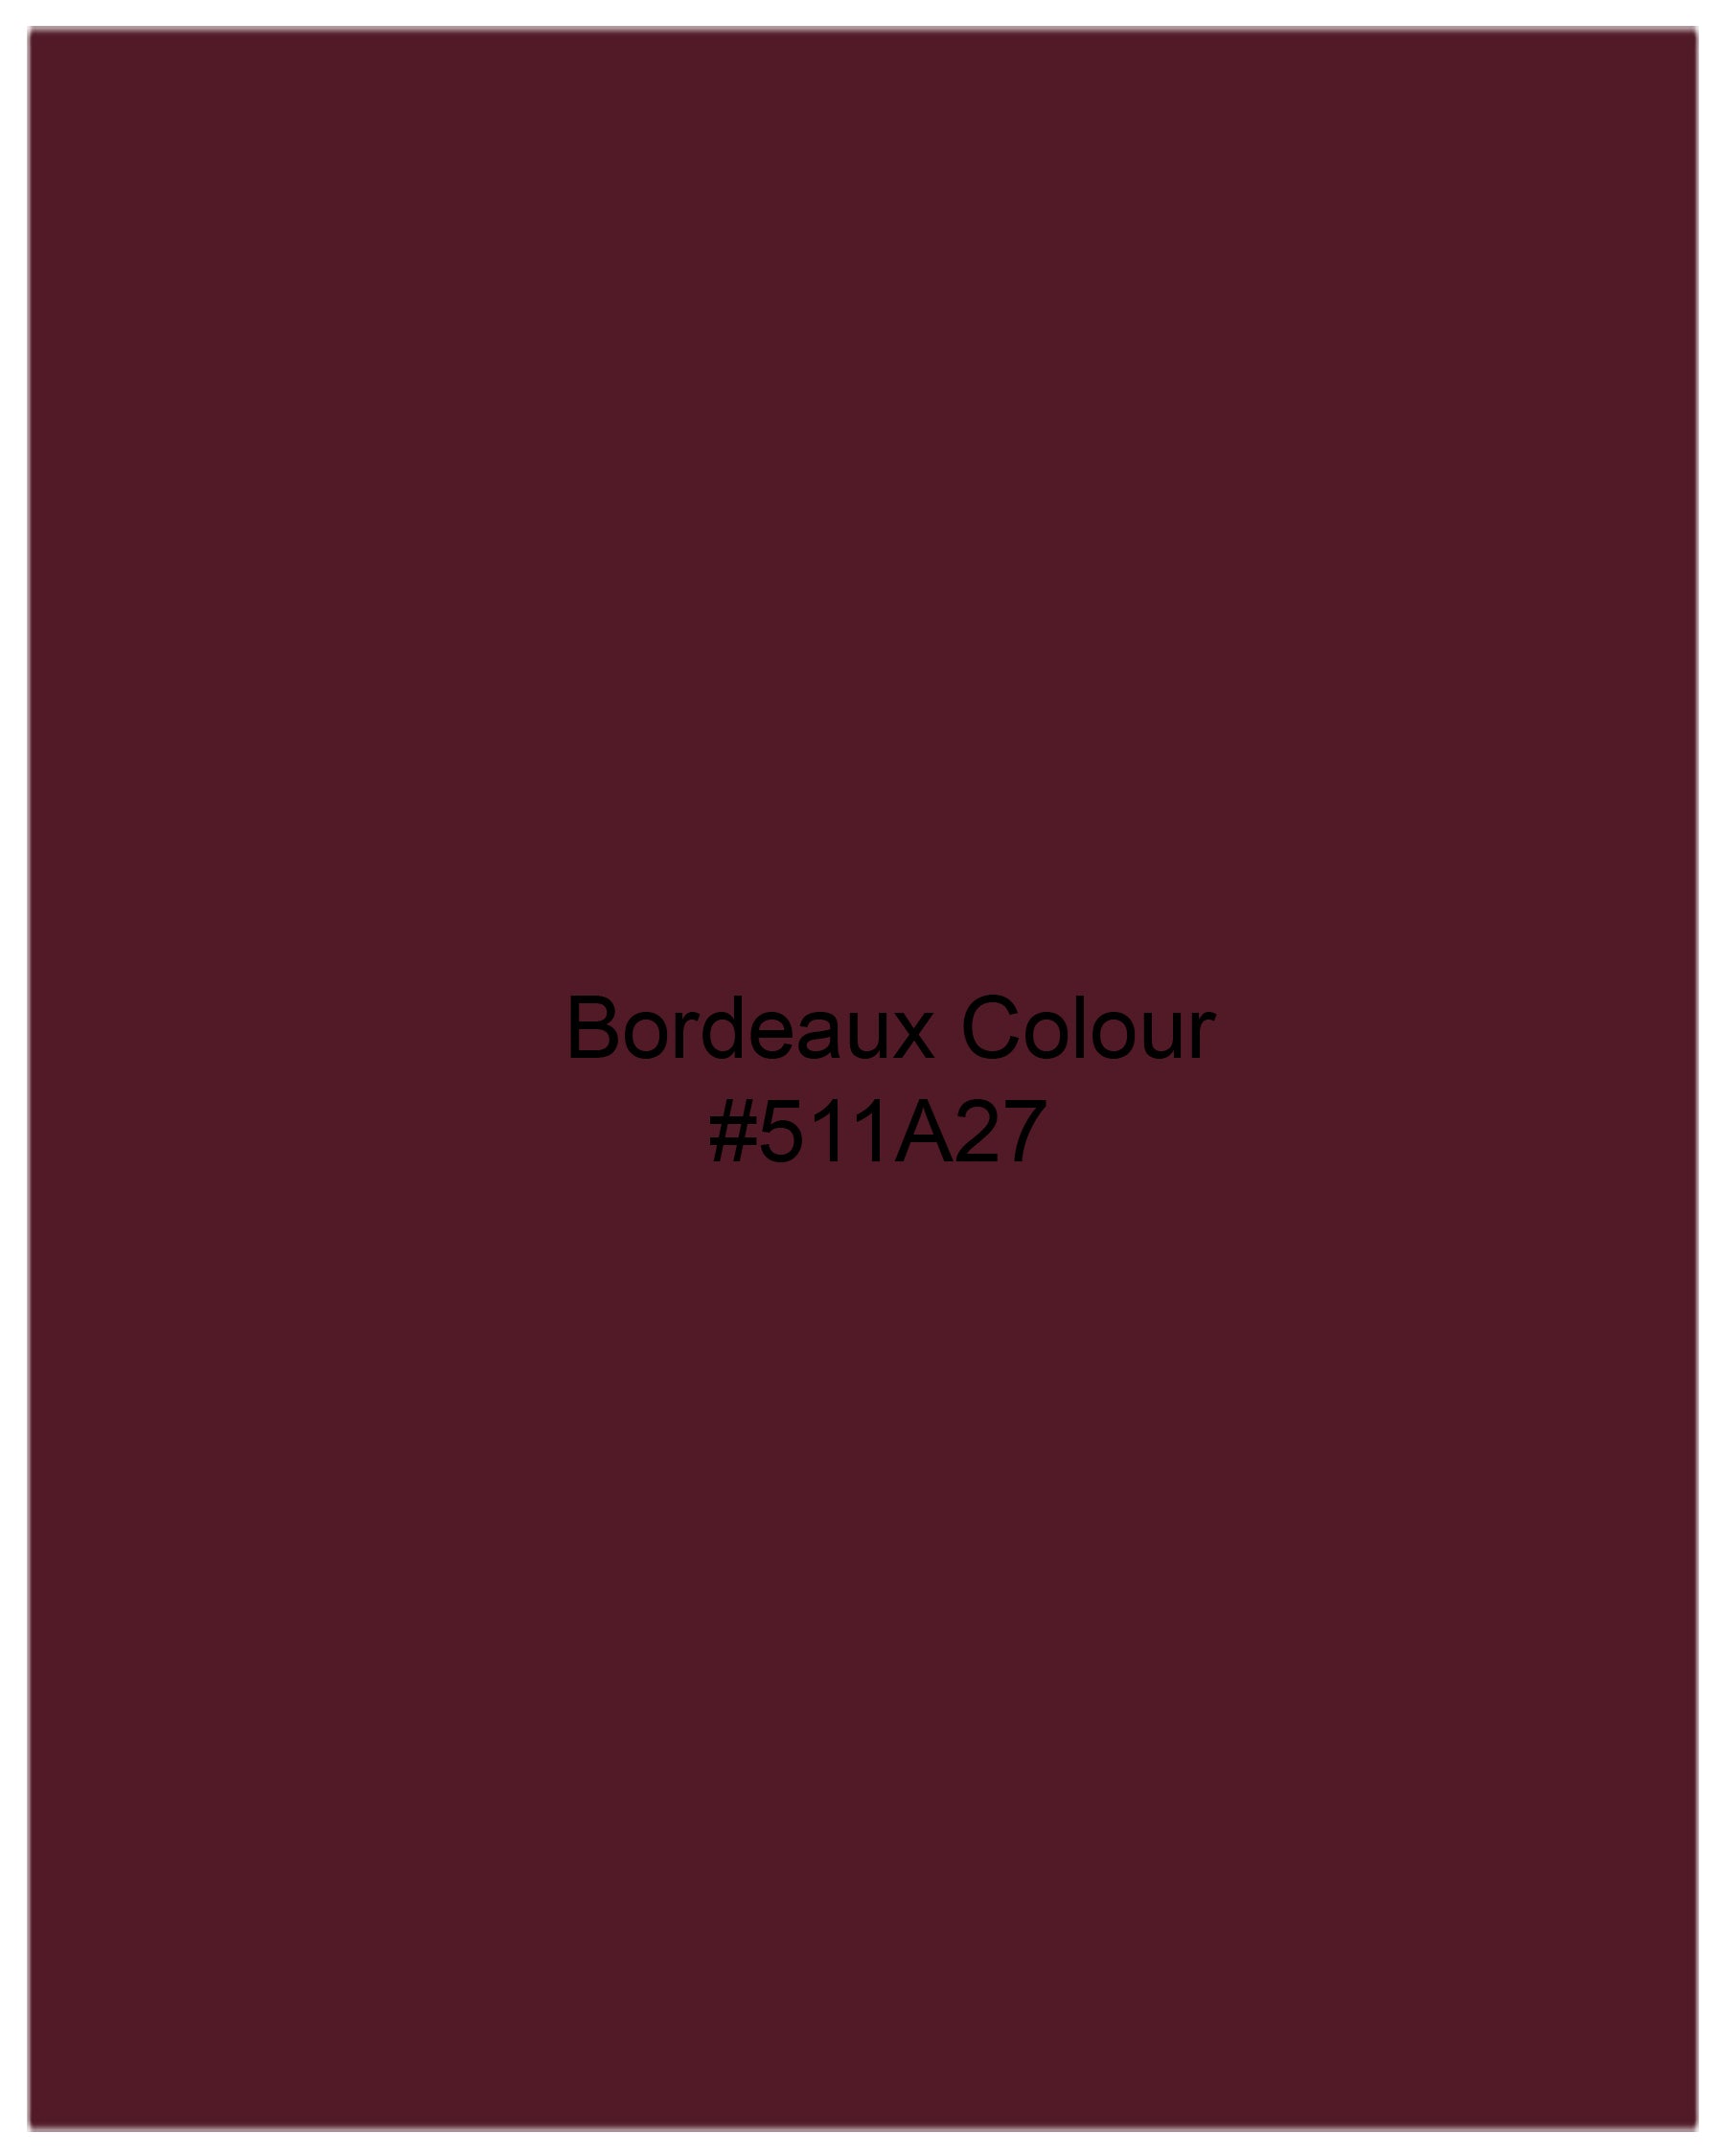 Bordeaux Maroon Premium Tencel Shirt 7940-BD-38, 7940-BD-H-38, 7940-BD-39, 7940-BD-H-39, 7940-BD-40, 7940-BD-H-40, 7940-BD-42, 7940-BD-H-42, 7940-BD-44, 7940-BD-H-44, 7940-BD-46, 7940-BD-H-46, 7940-BD-48, 7940-BD-H-48, 7940-BD-50, 7940-BD-H-50, 7940-BD-52, 7940-BD-H-52